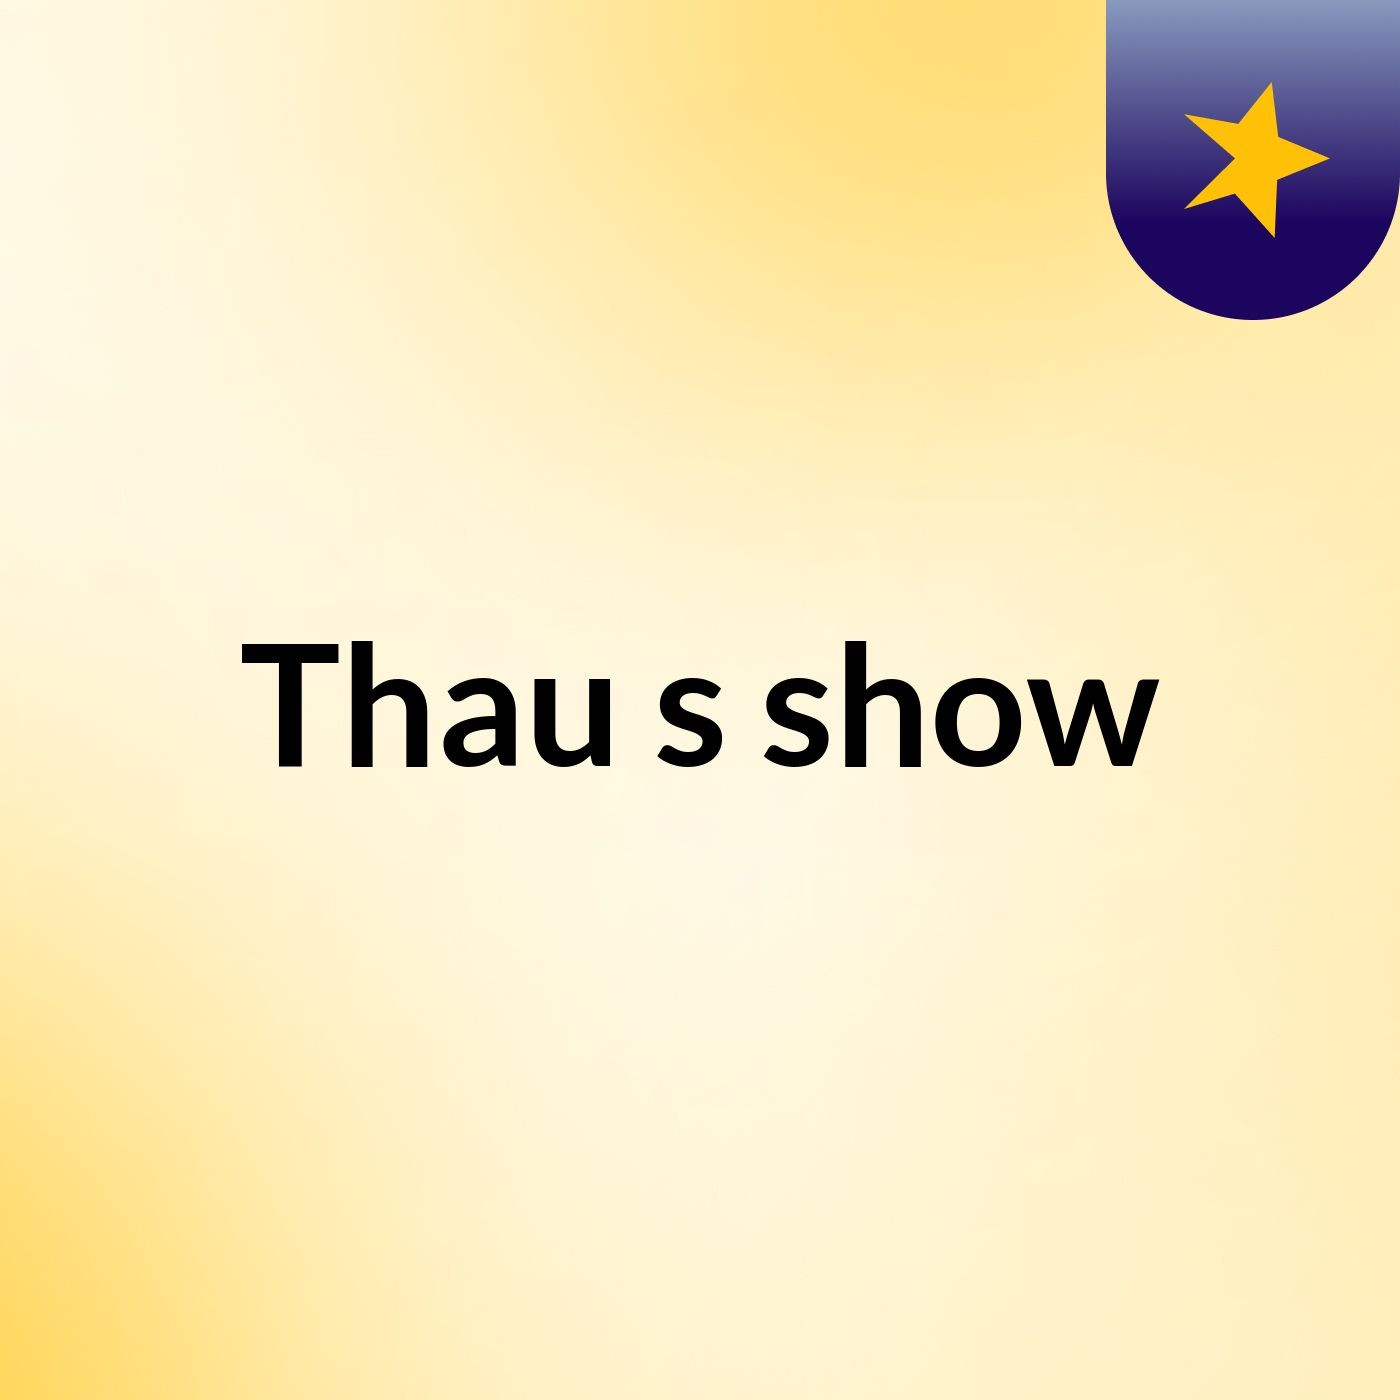 Thau's show